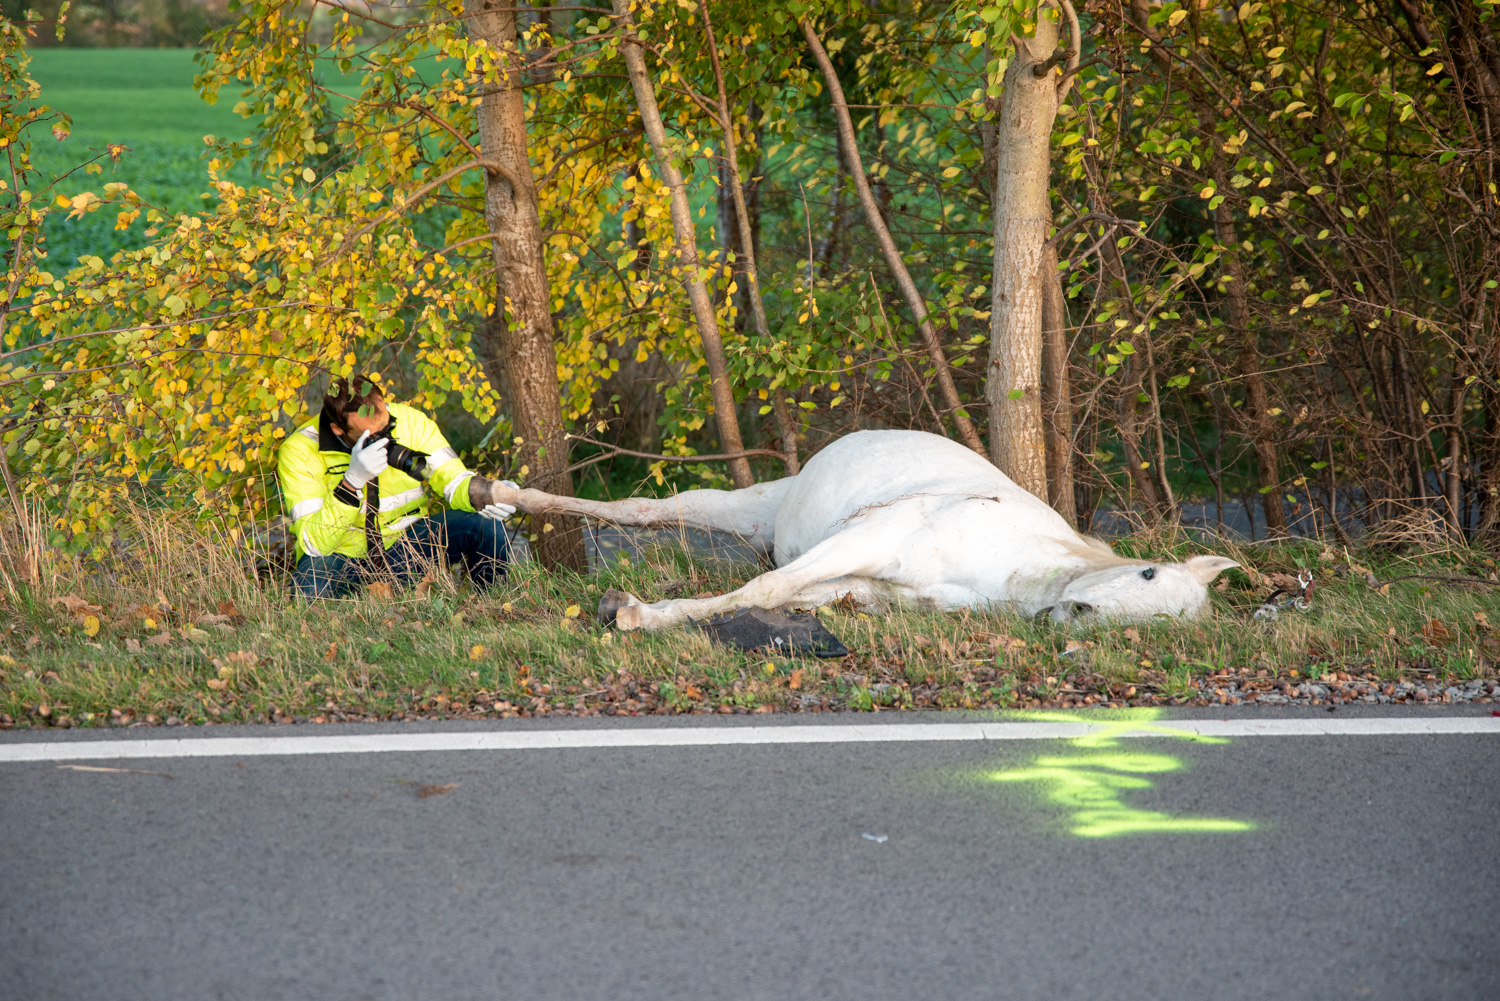 Reiterin und Pferd starben an der Unfallstelle.